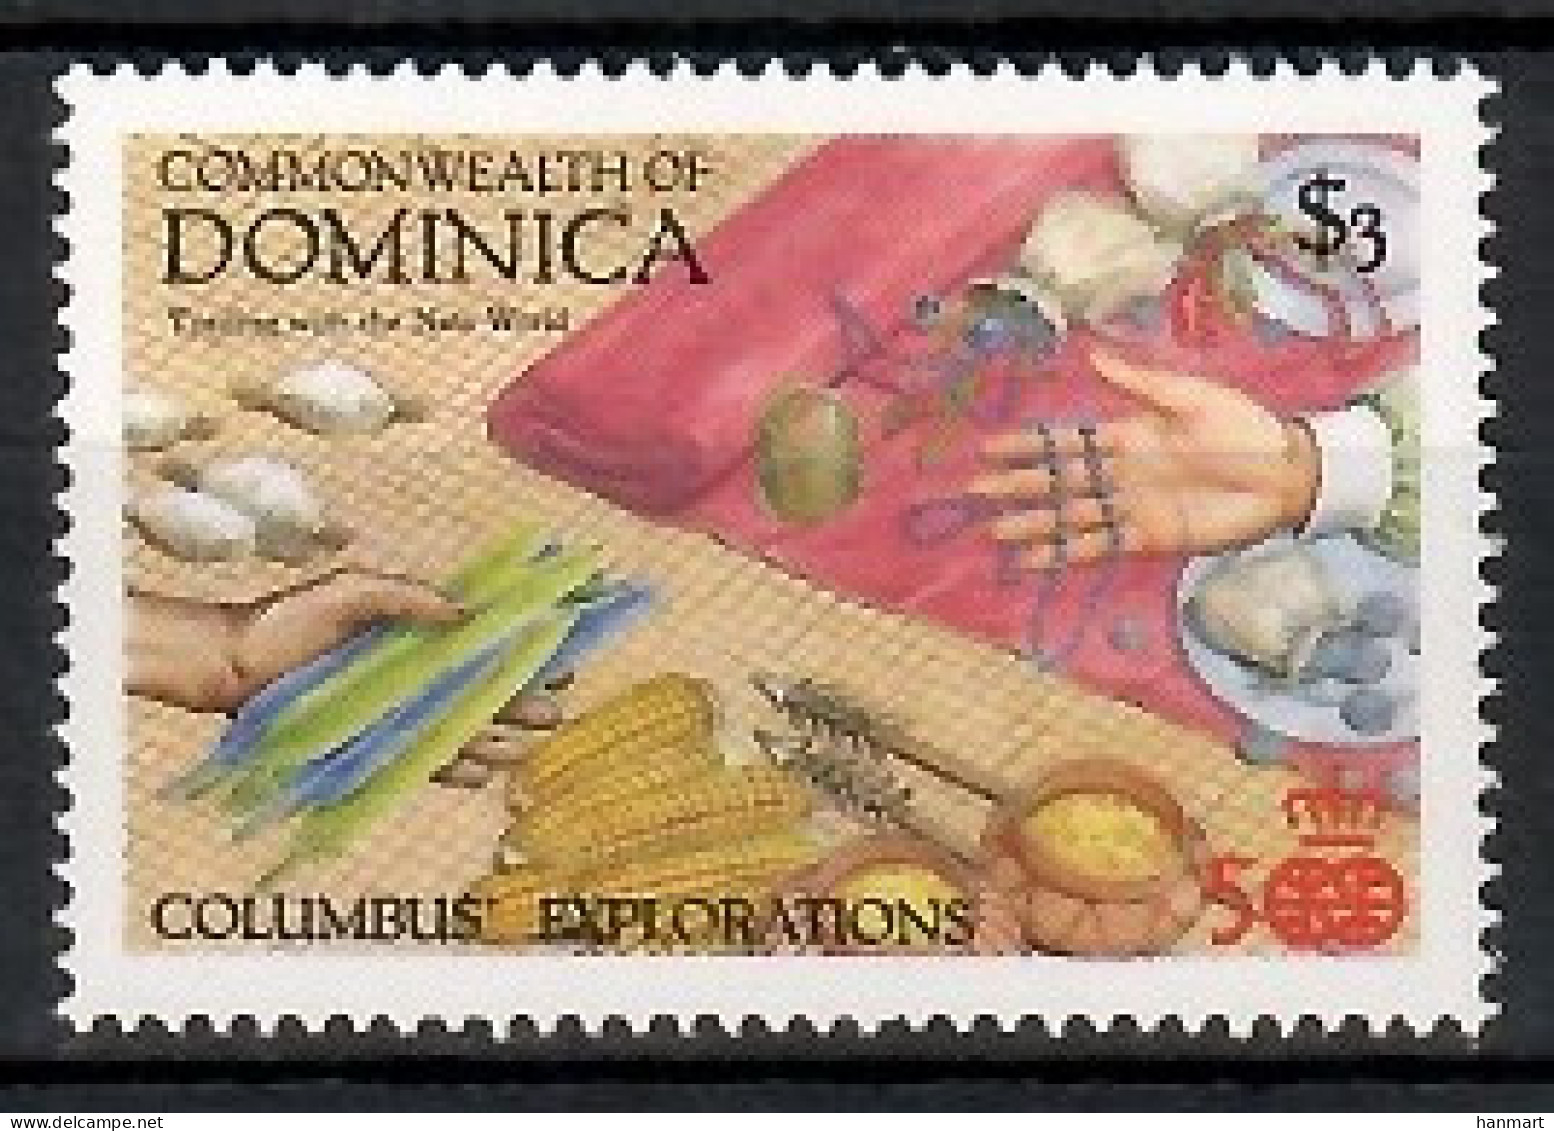 Dominica 1987 Mi 1047 MNH  (LZS2 DMN1047) - Minéraux